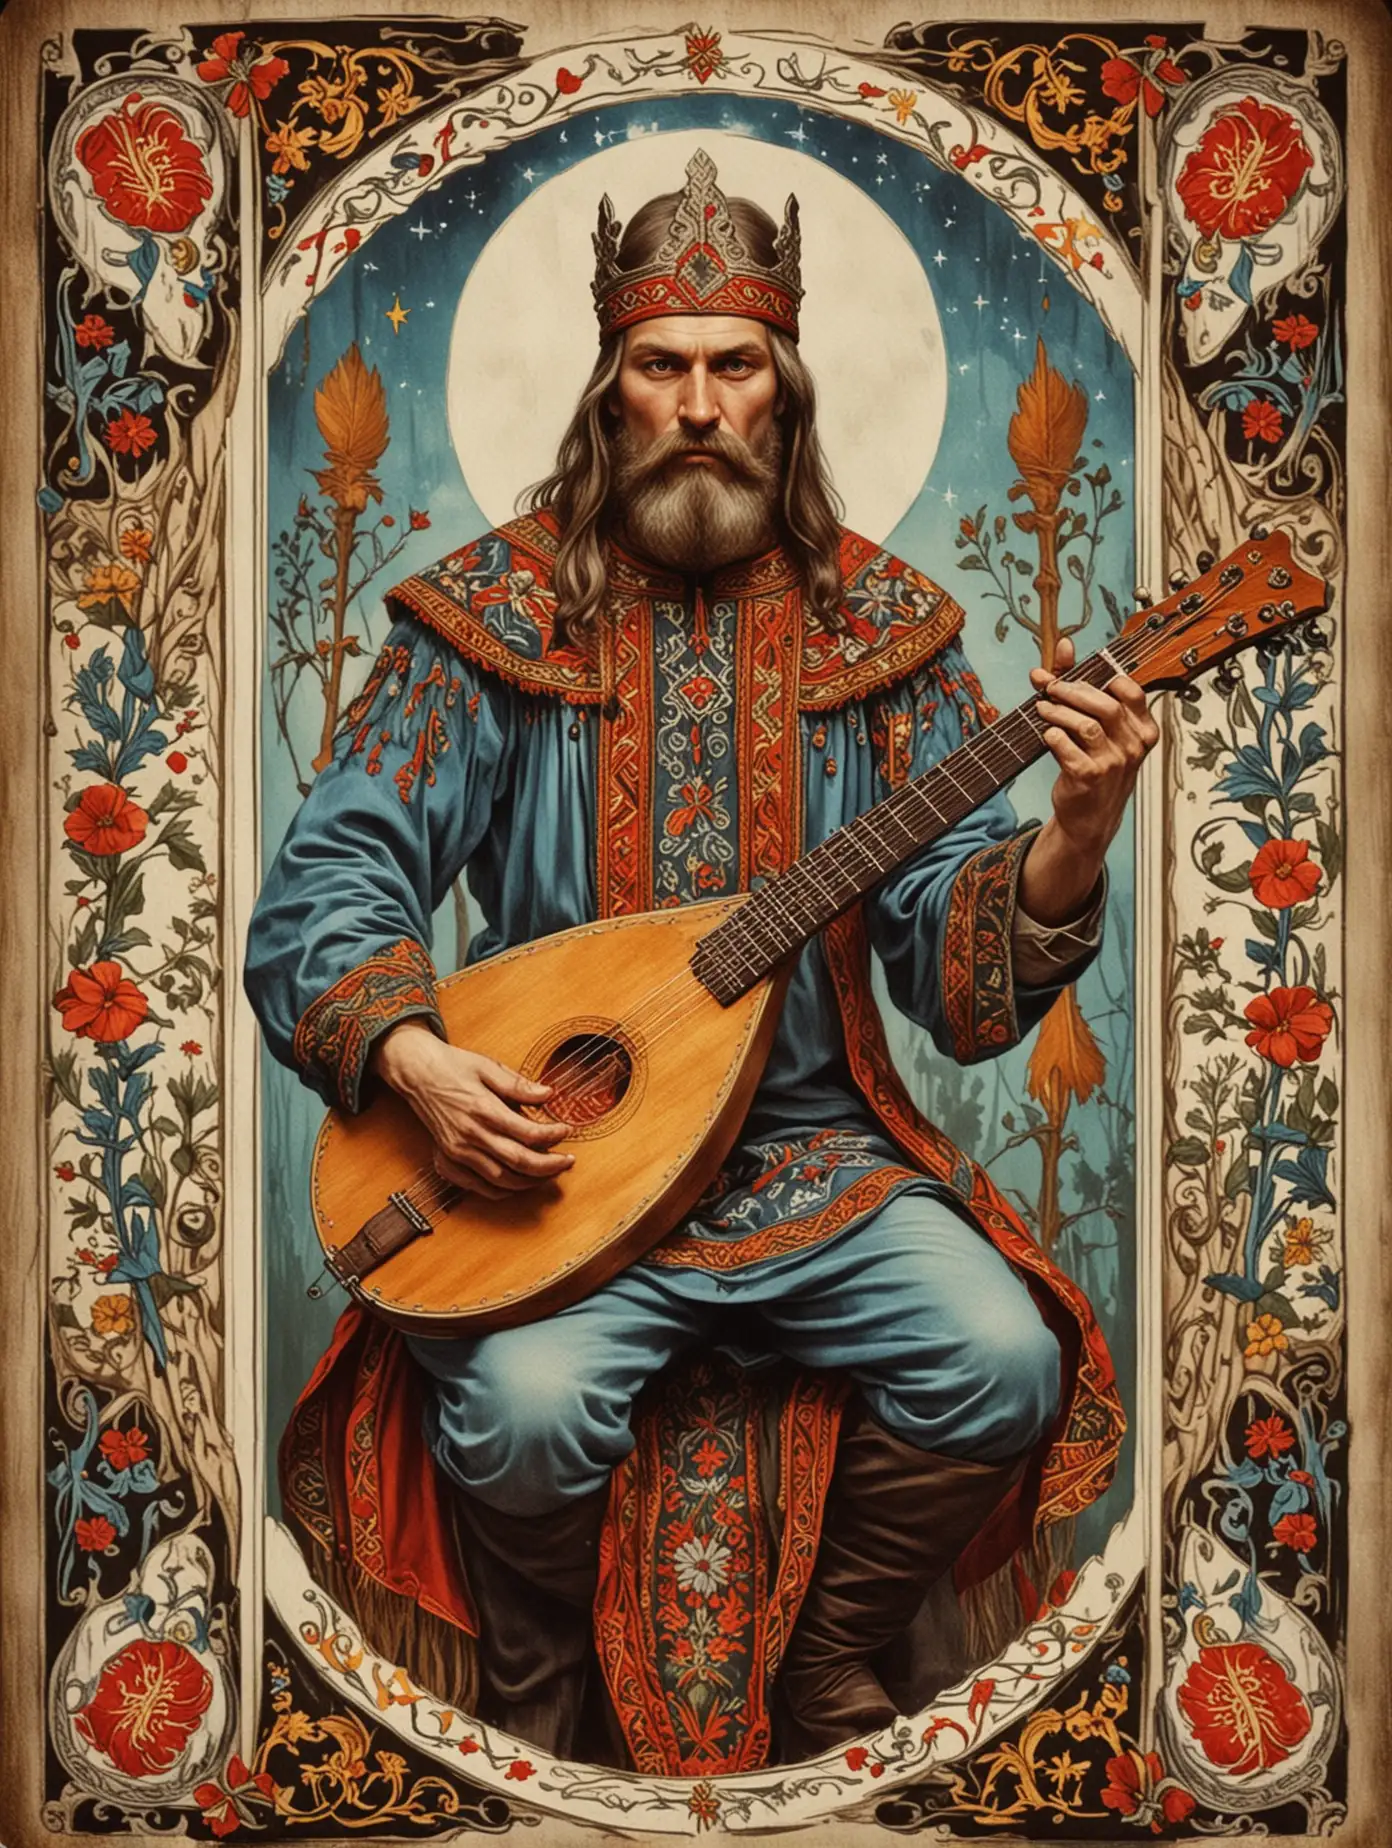 Slavic-Style-Tarot-Card-Featuring-Man-Playing-Balalaika